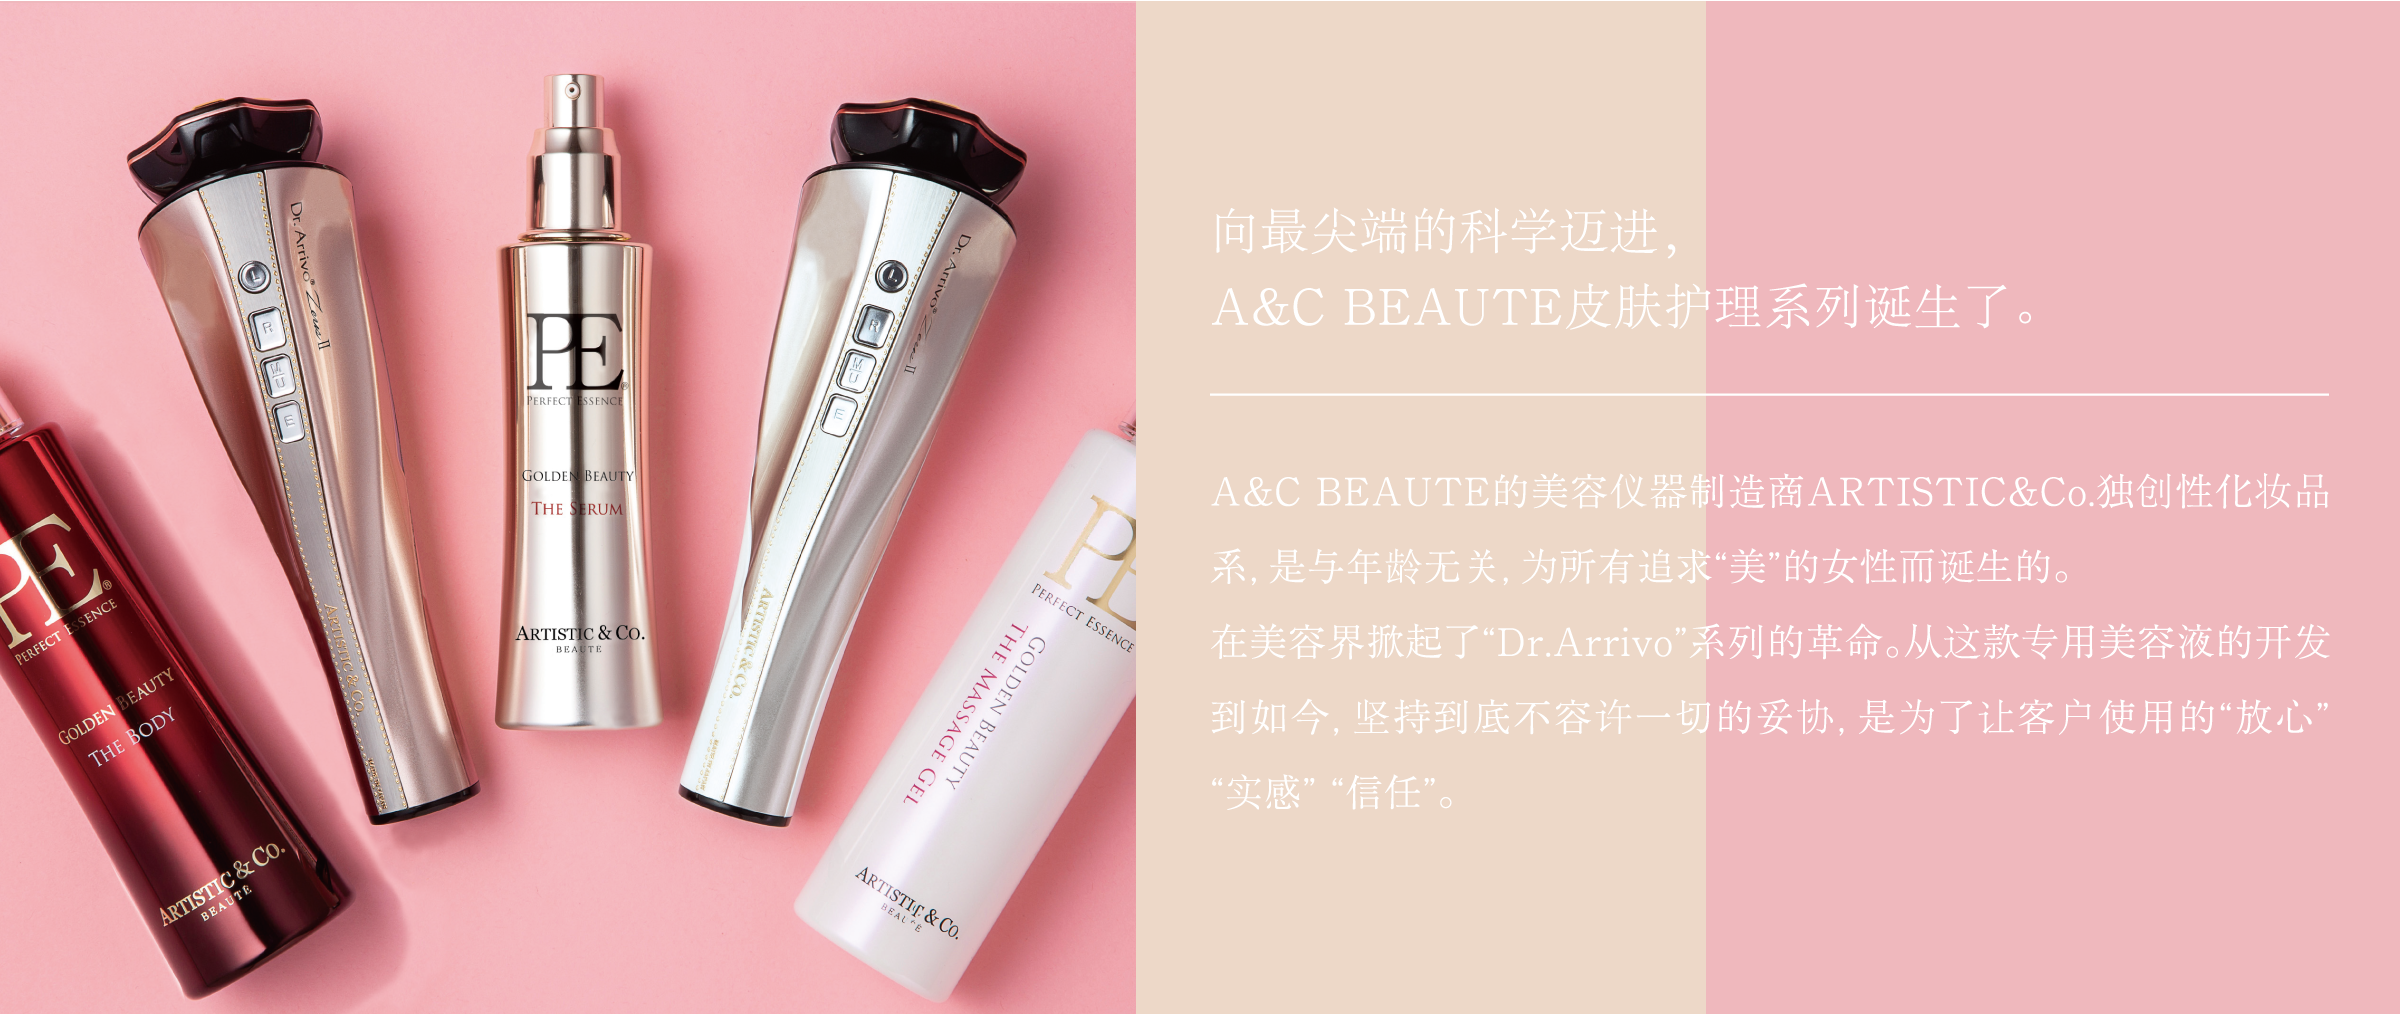 化妆品系｜株式会社A&C BEAUTE／ARTISTIC&Co.BEAUTE